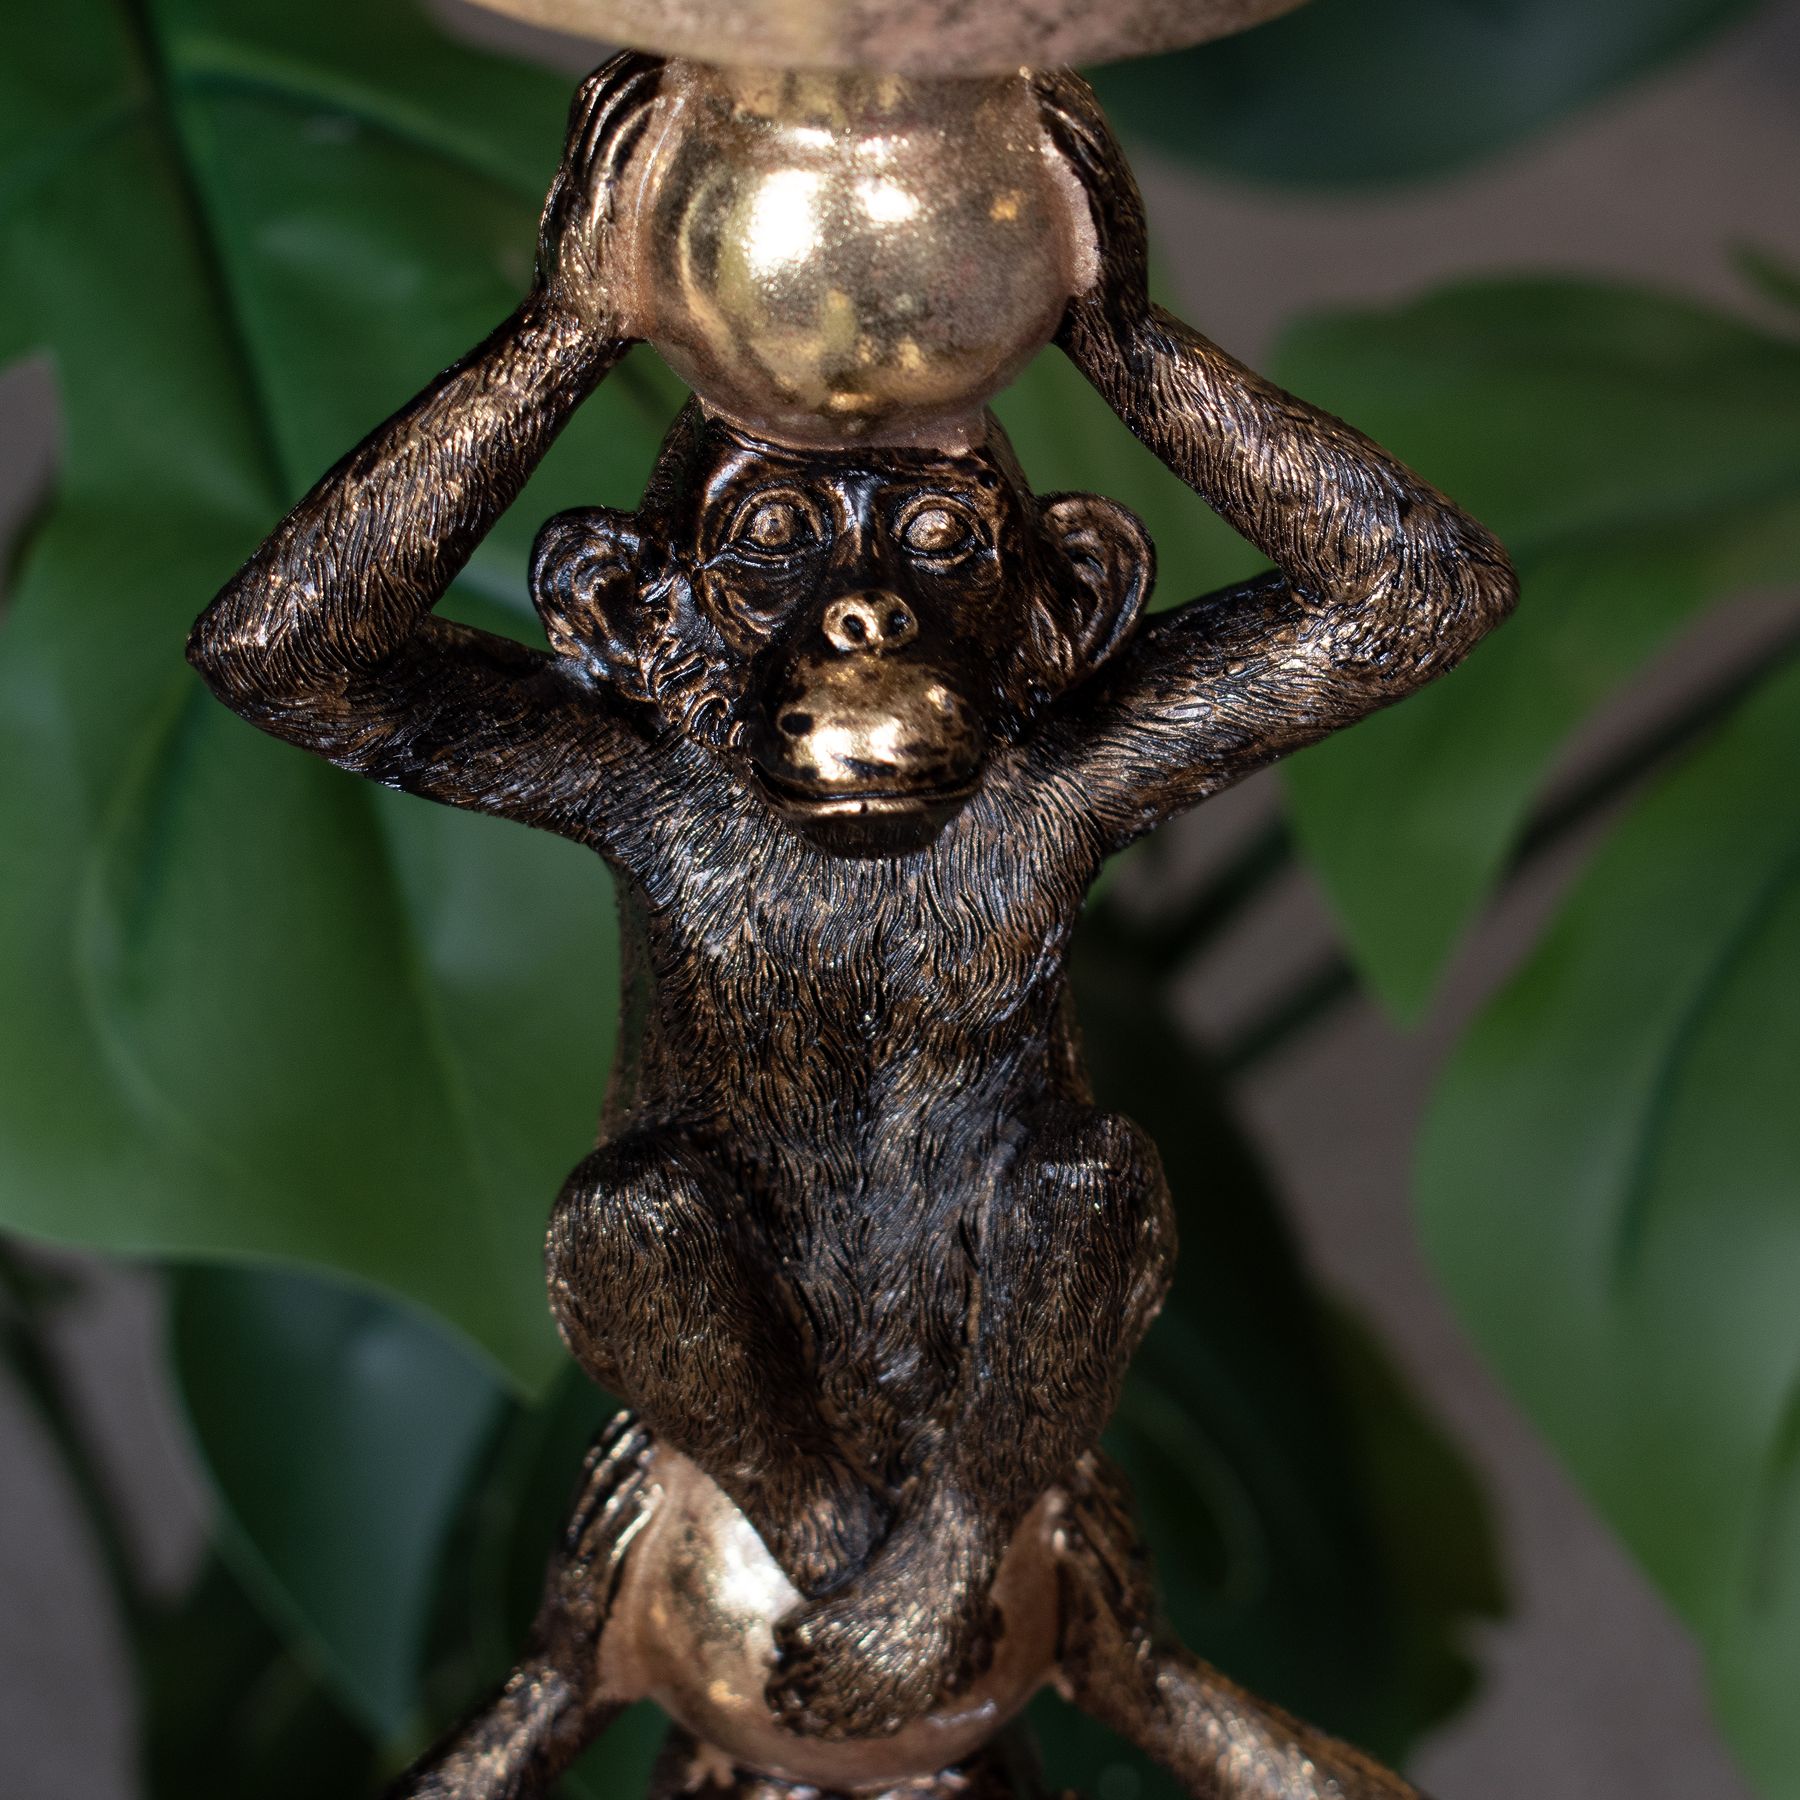 Double Monkey Candle Holder - Image 5